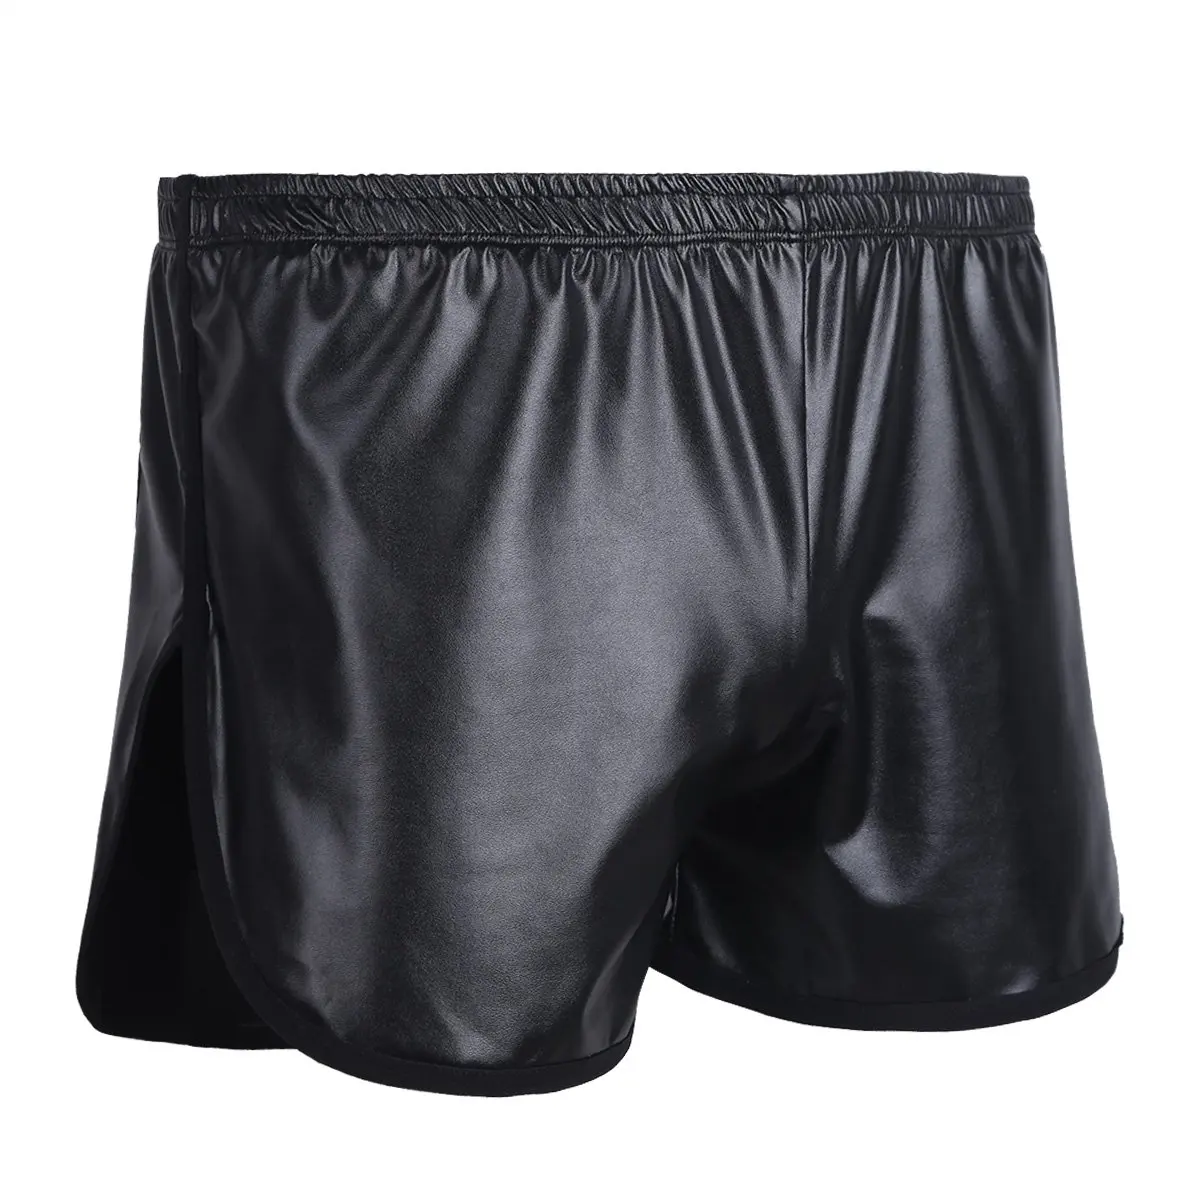 Faux Leather Boxer Trunk WetLook Lounge Sports Short Pants boxers short Casual Shorts Men best men's casual shorts Casual Shorts